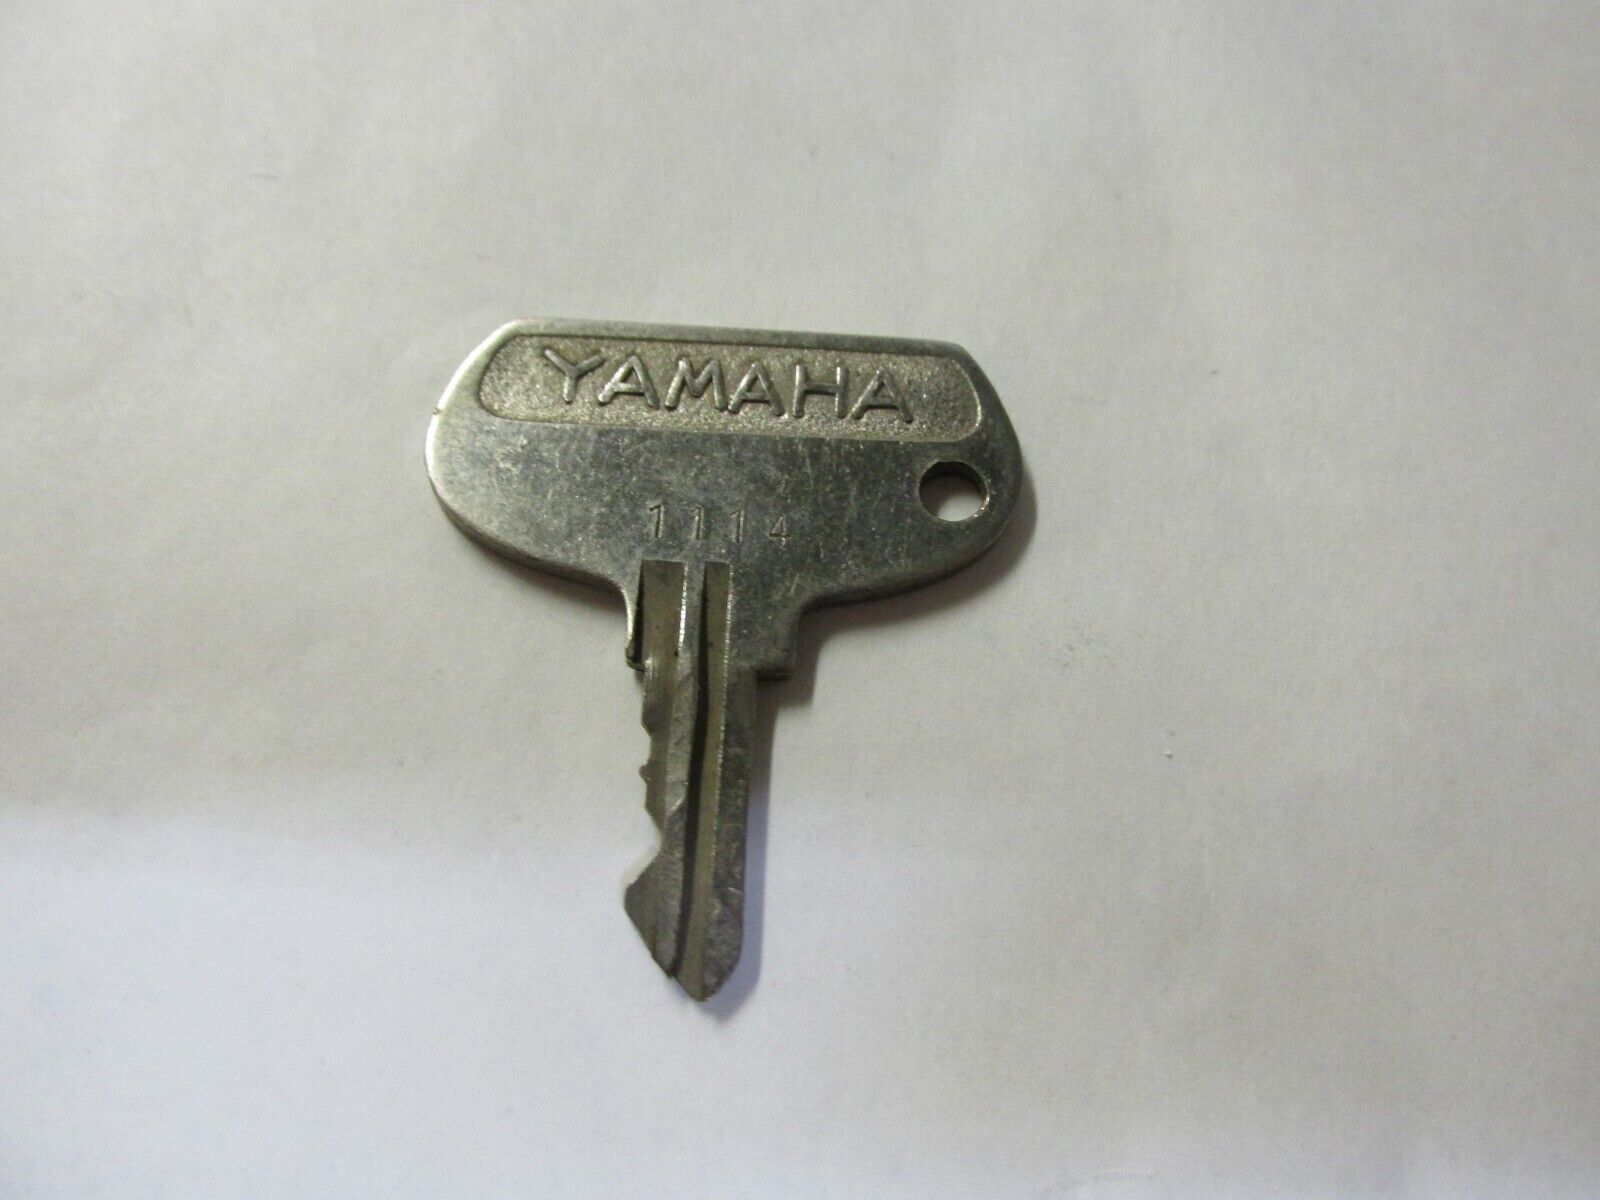 Vintage Yamaha OEM Factory Pre Cut Motorcycle Key # 1114